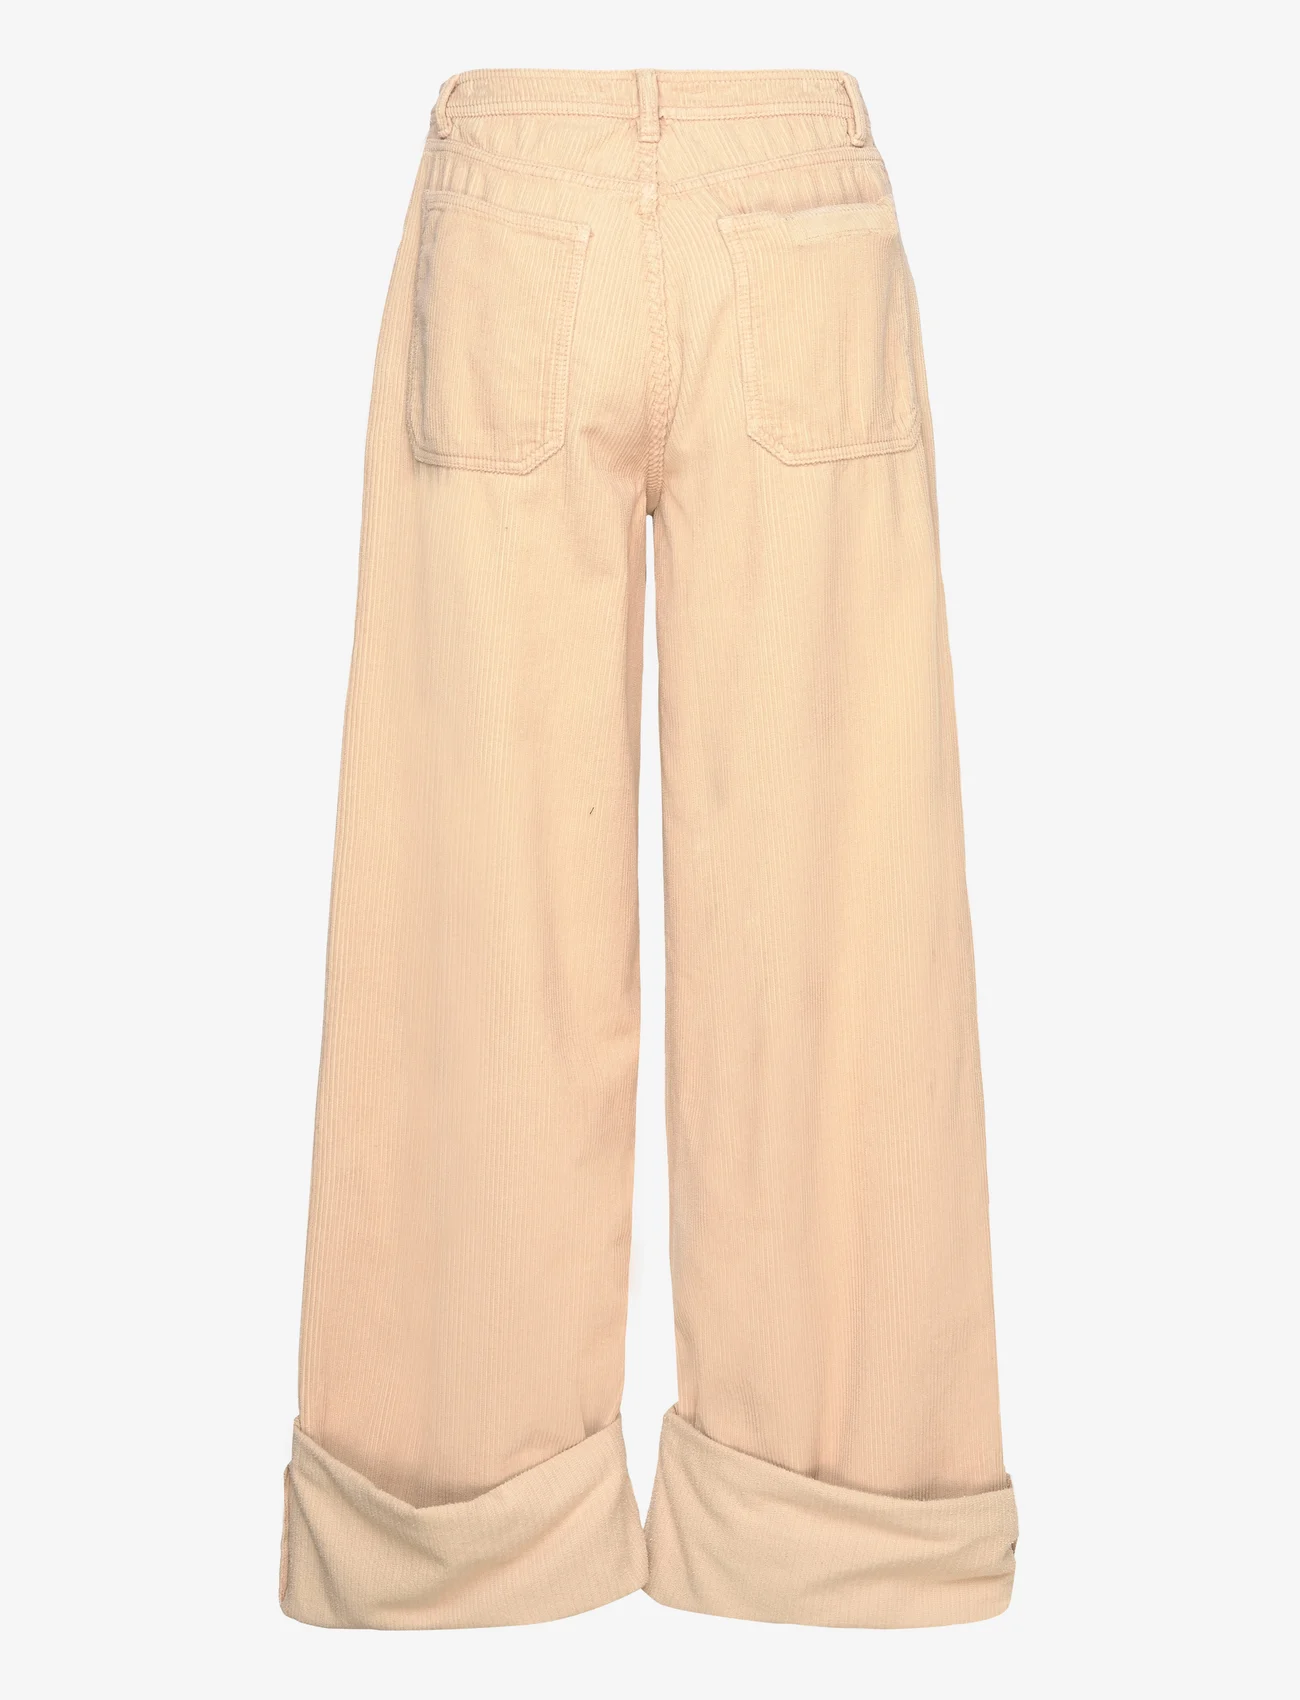 Cannari Concept - Big Pocket Pants - bukser med brede ben - mojave desert - 1